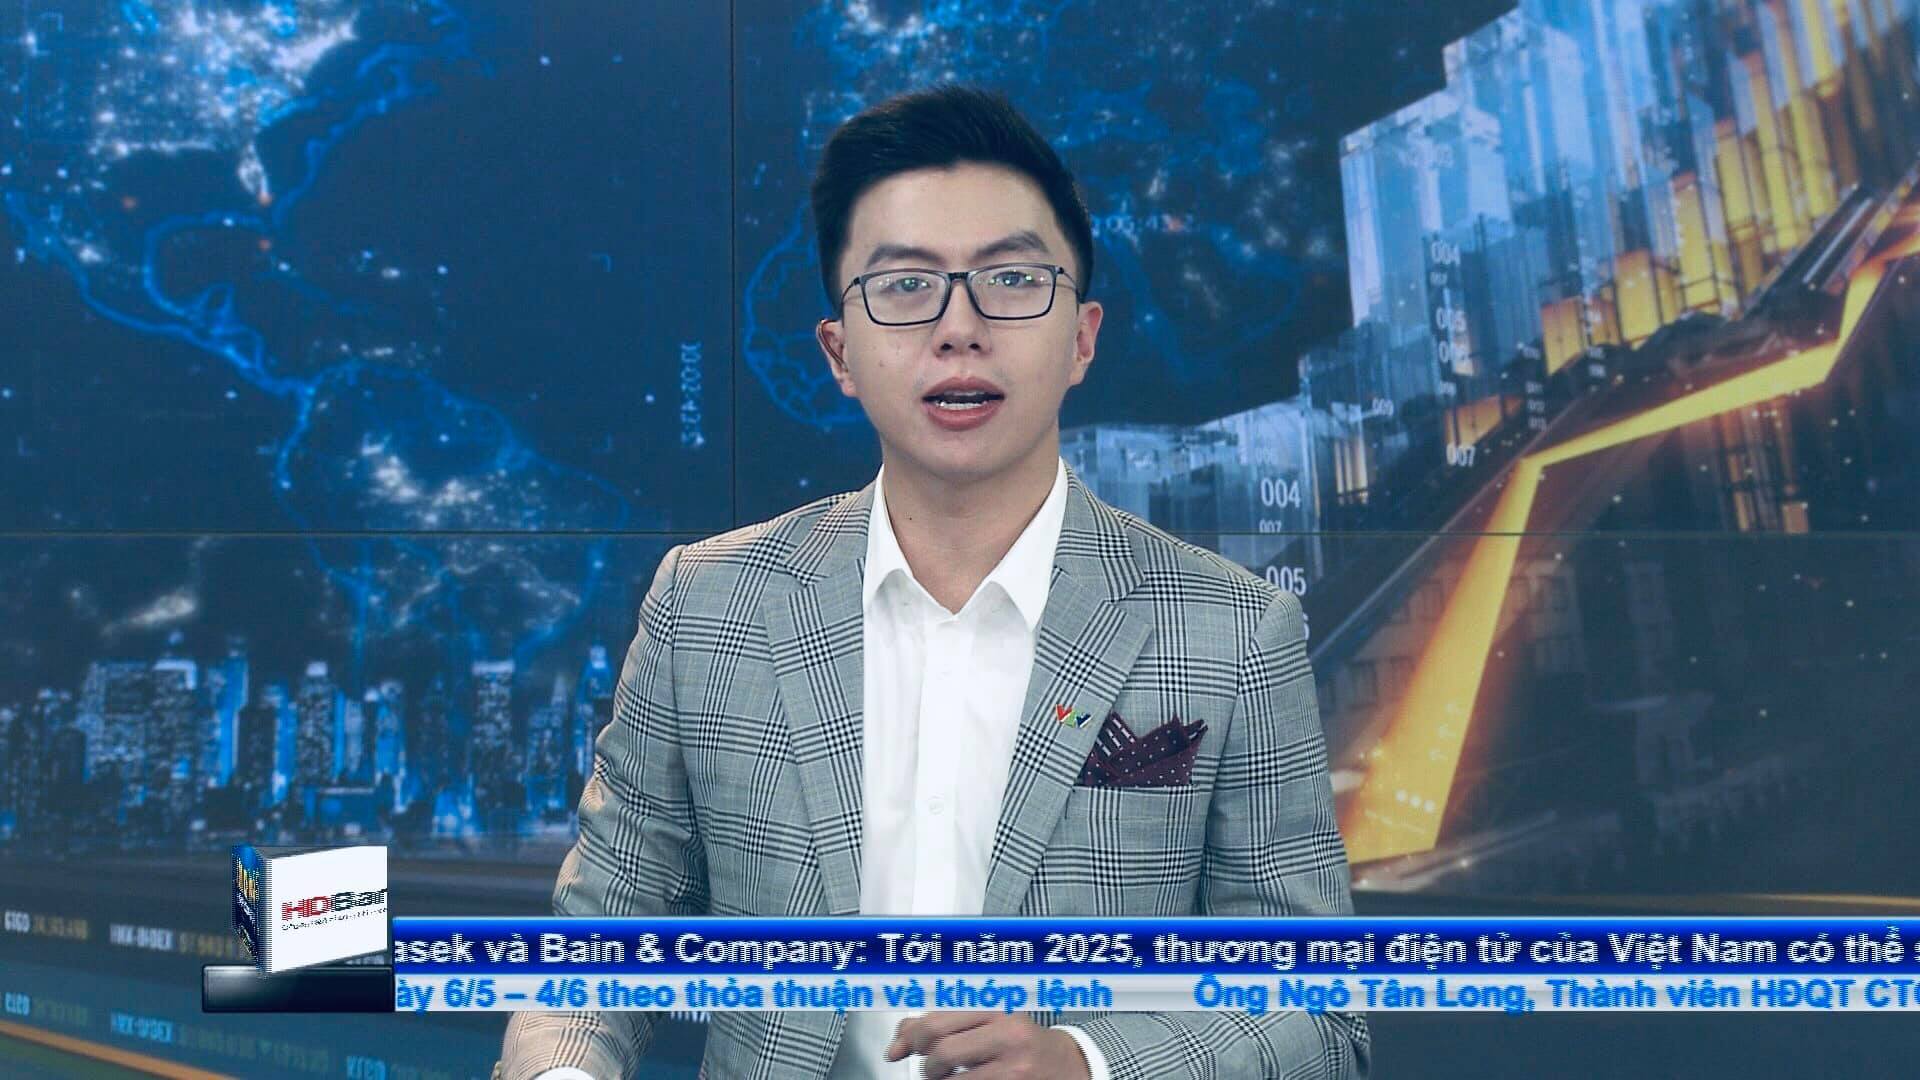 MC Hoàng Nam VTV: Không thích áp lực không hợp làm truyền hình - Ảnh 2.